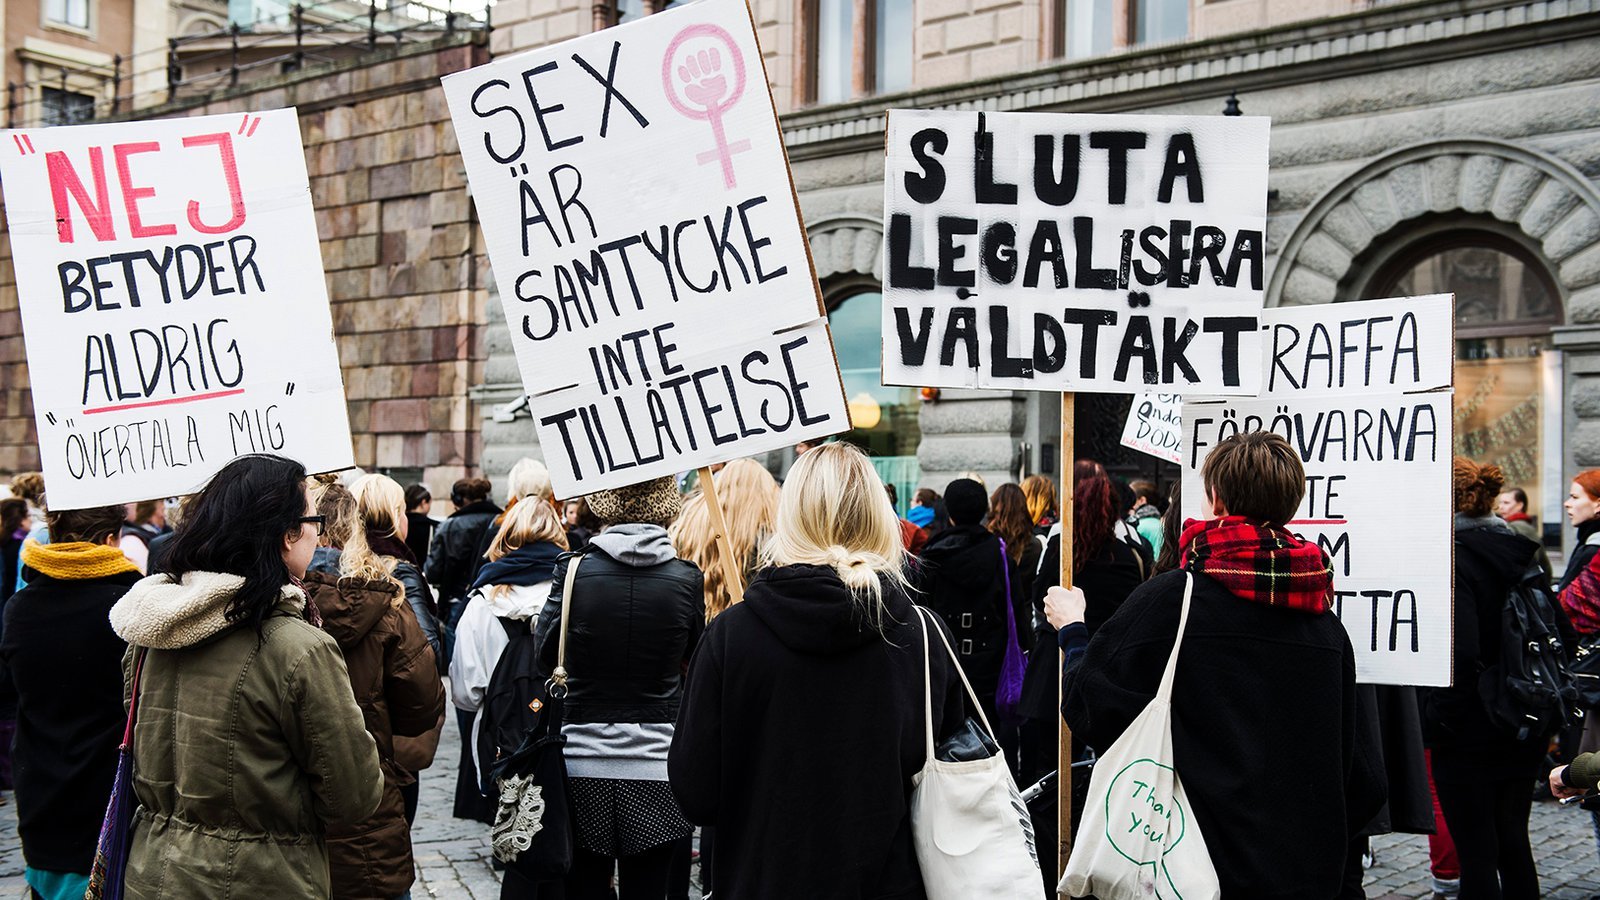  ”Legea consimţământului” a crescut numărul condamnărilor pentru viol în Suedia